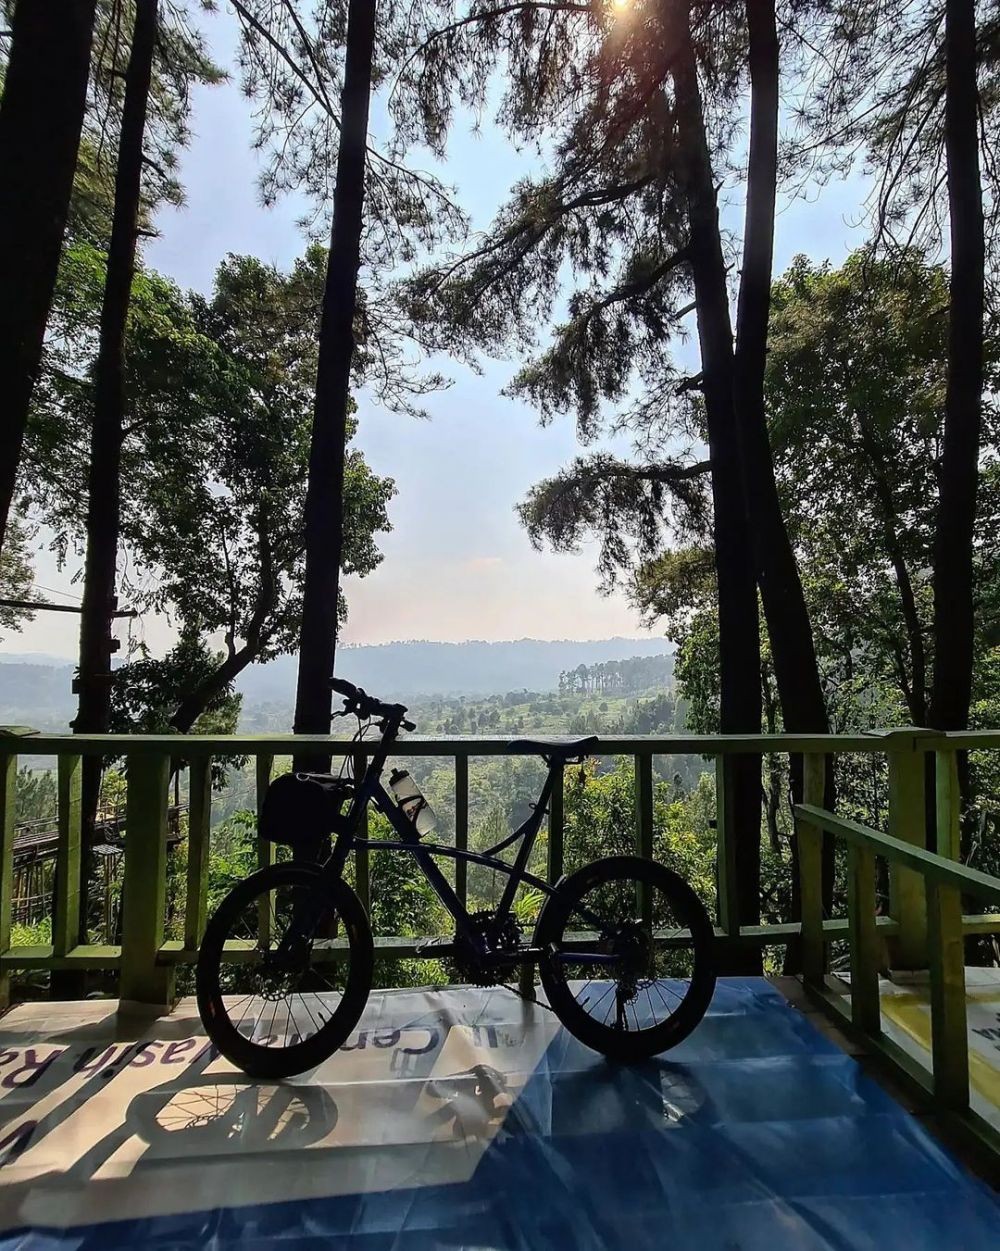 10 Lokasi yang Seru untuk Bersepeda di Bogor, Pikiran Tambah Segar 